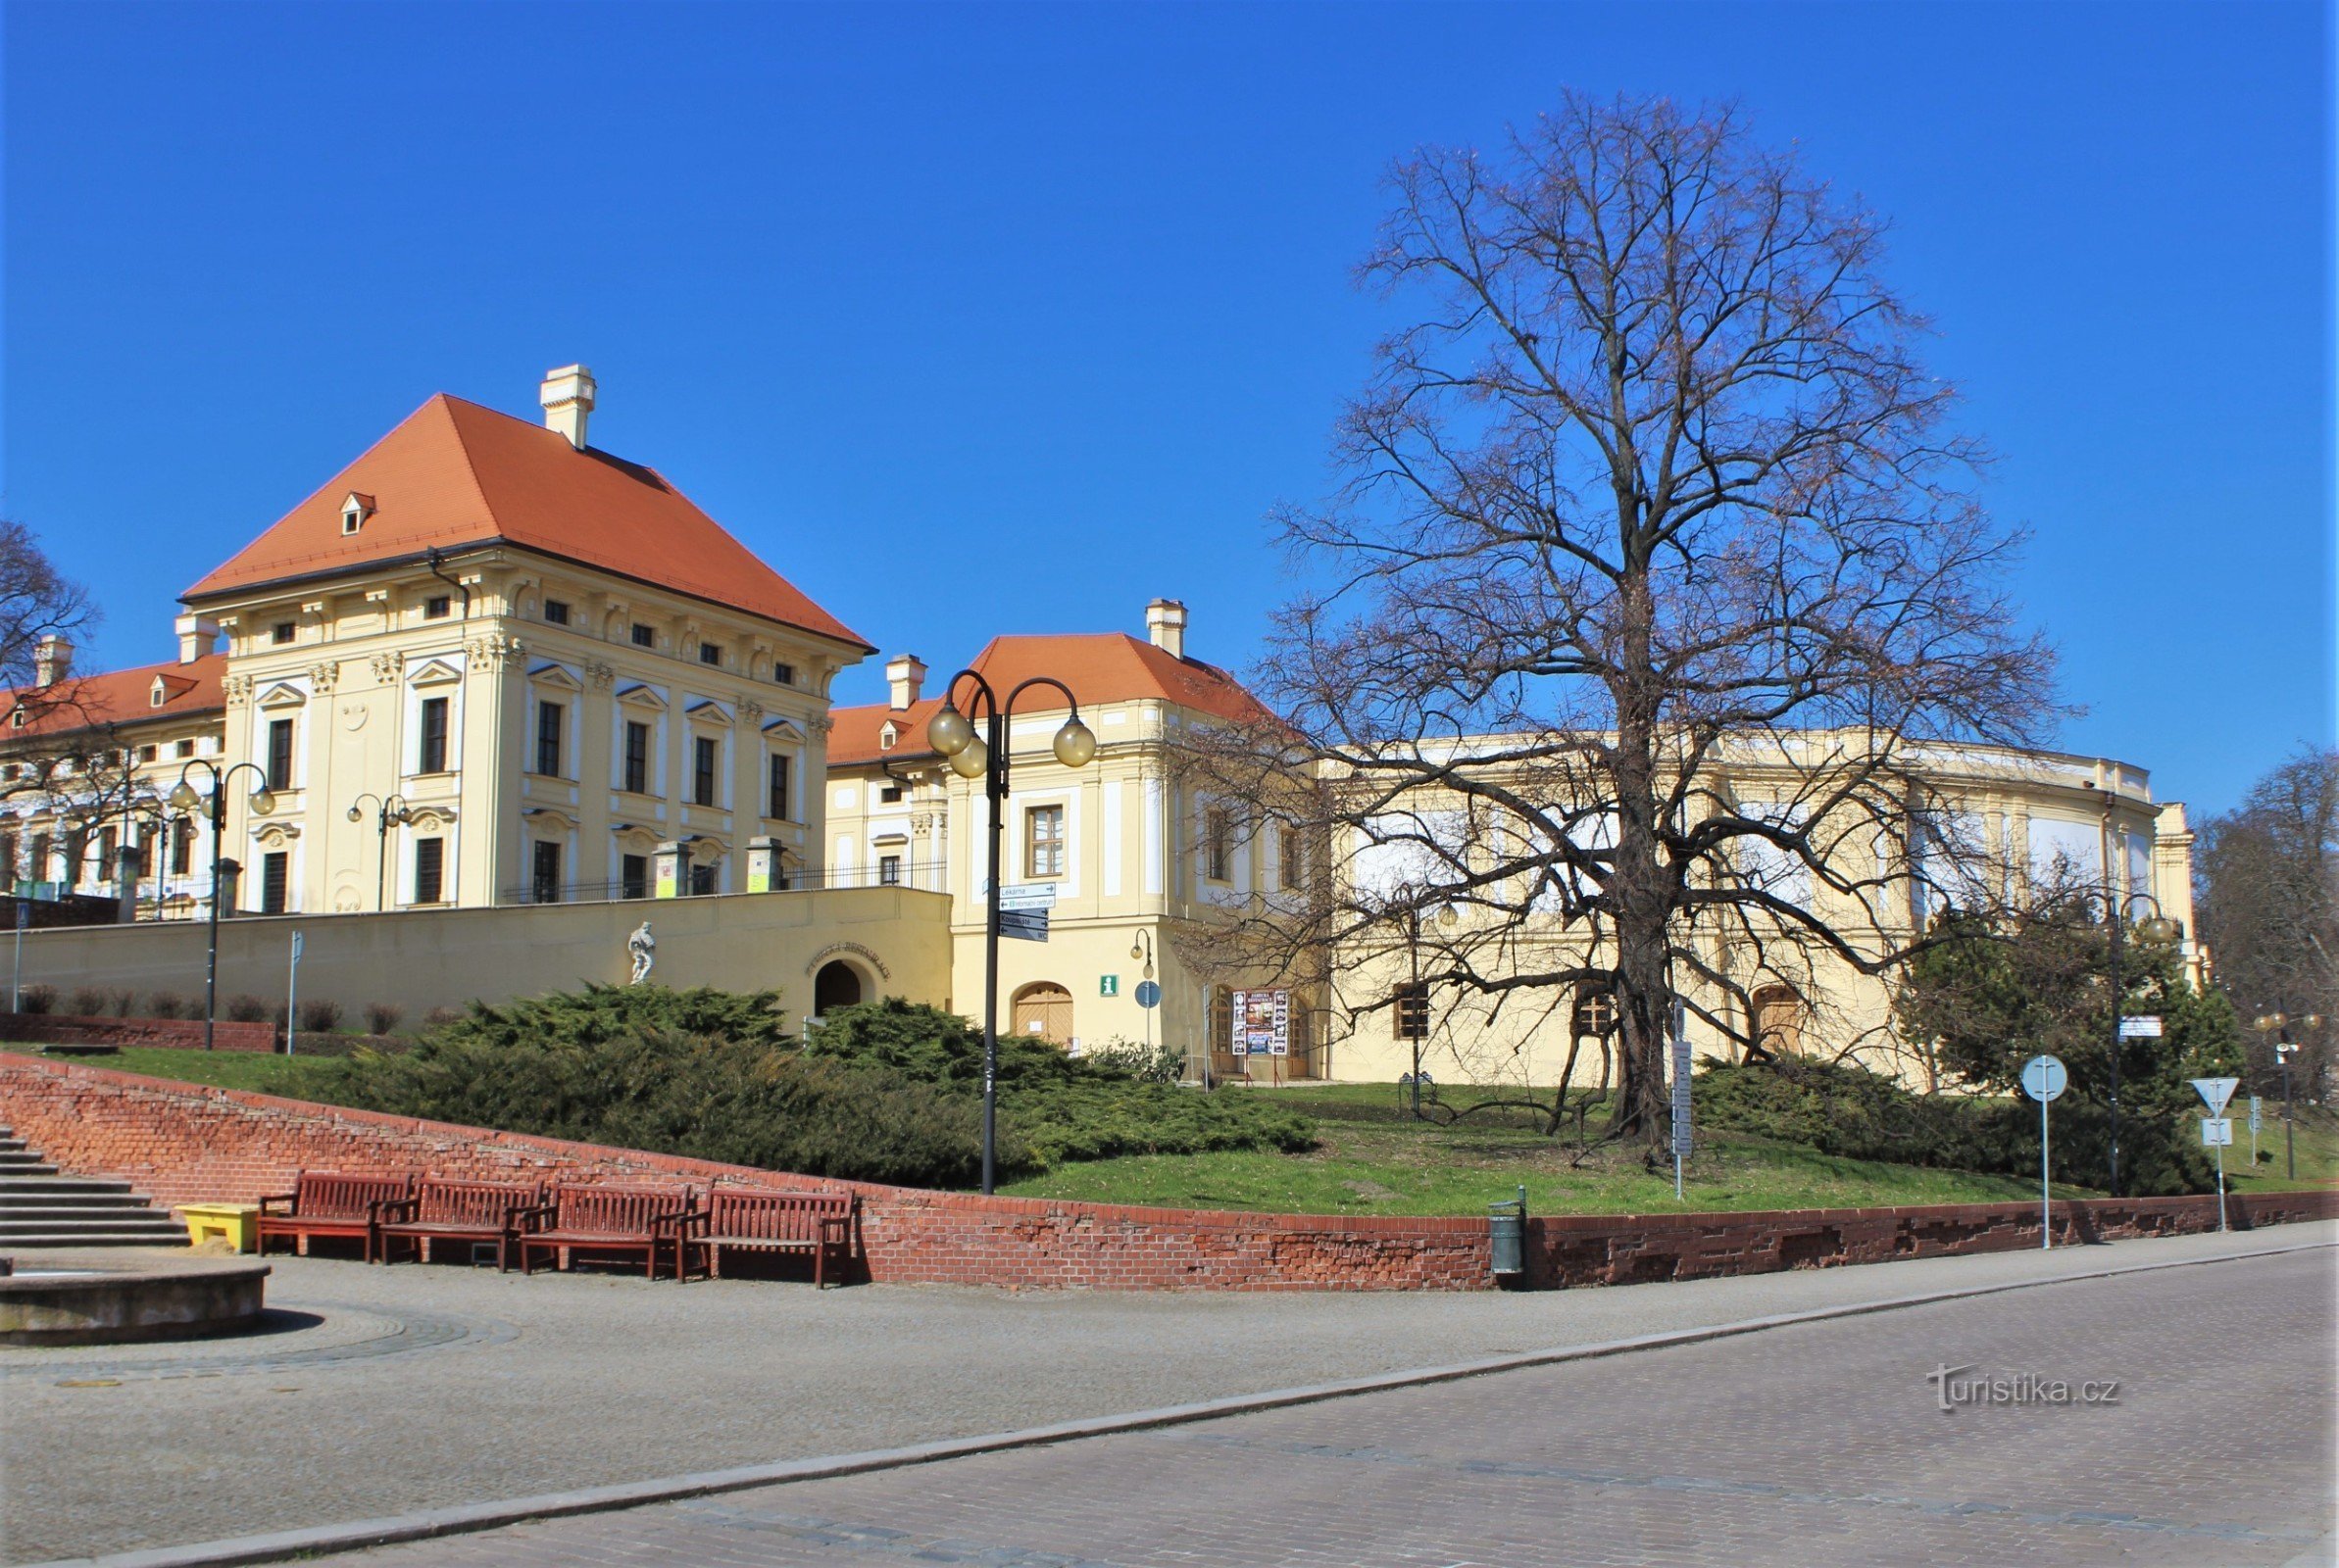 Slavkov perto de Brno - Centro de informações